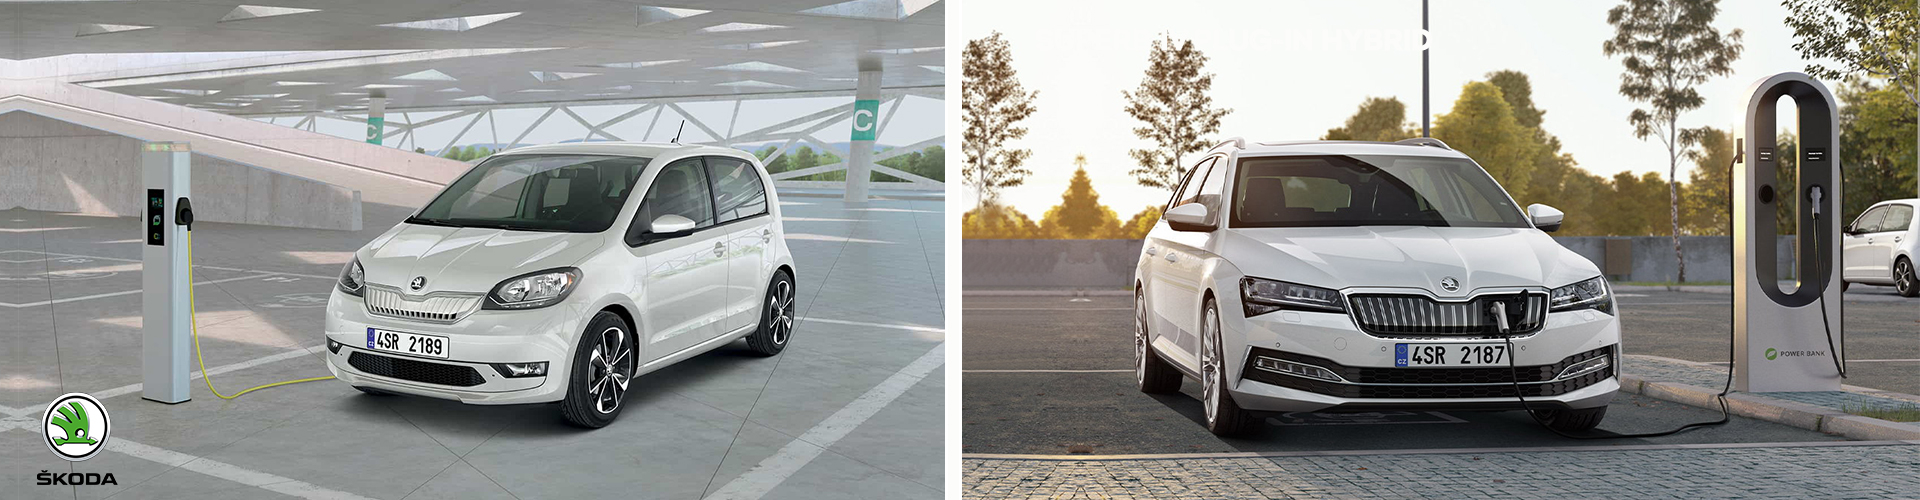 La mobilità sostenibile secondo Škoda